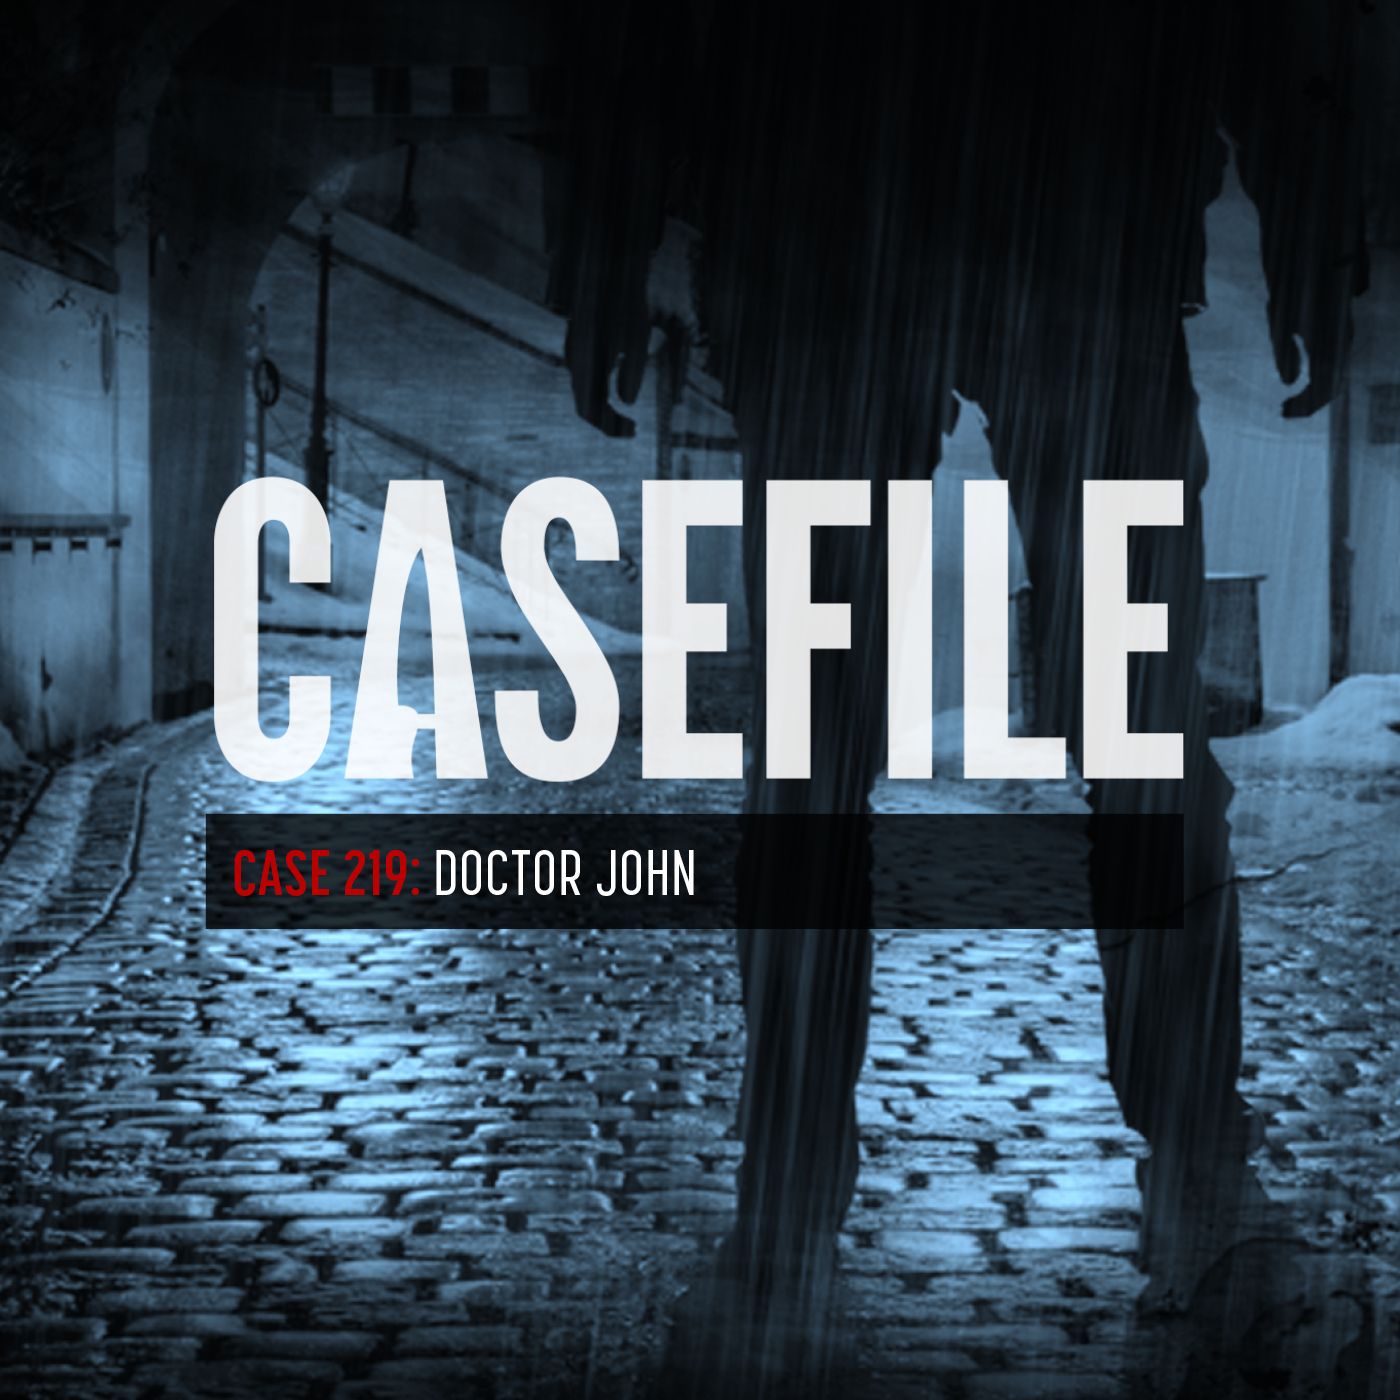 Case 219: Doctor John